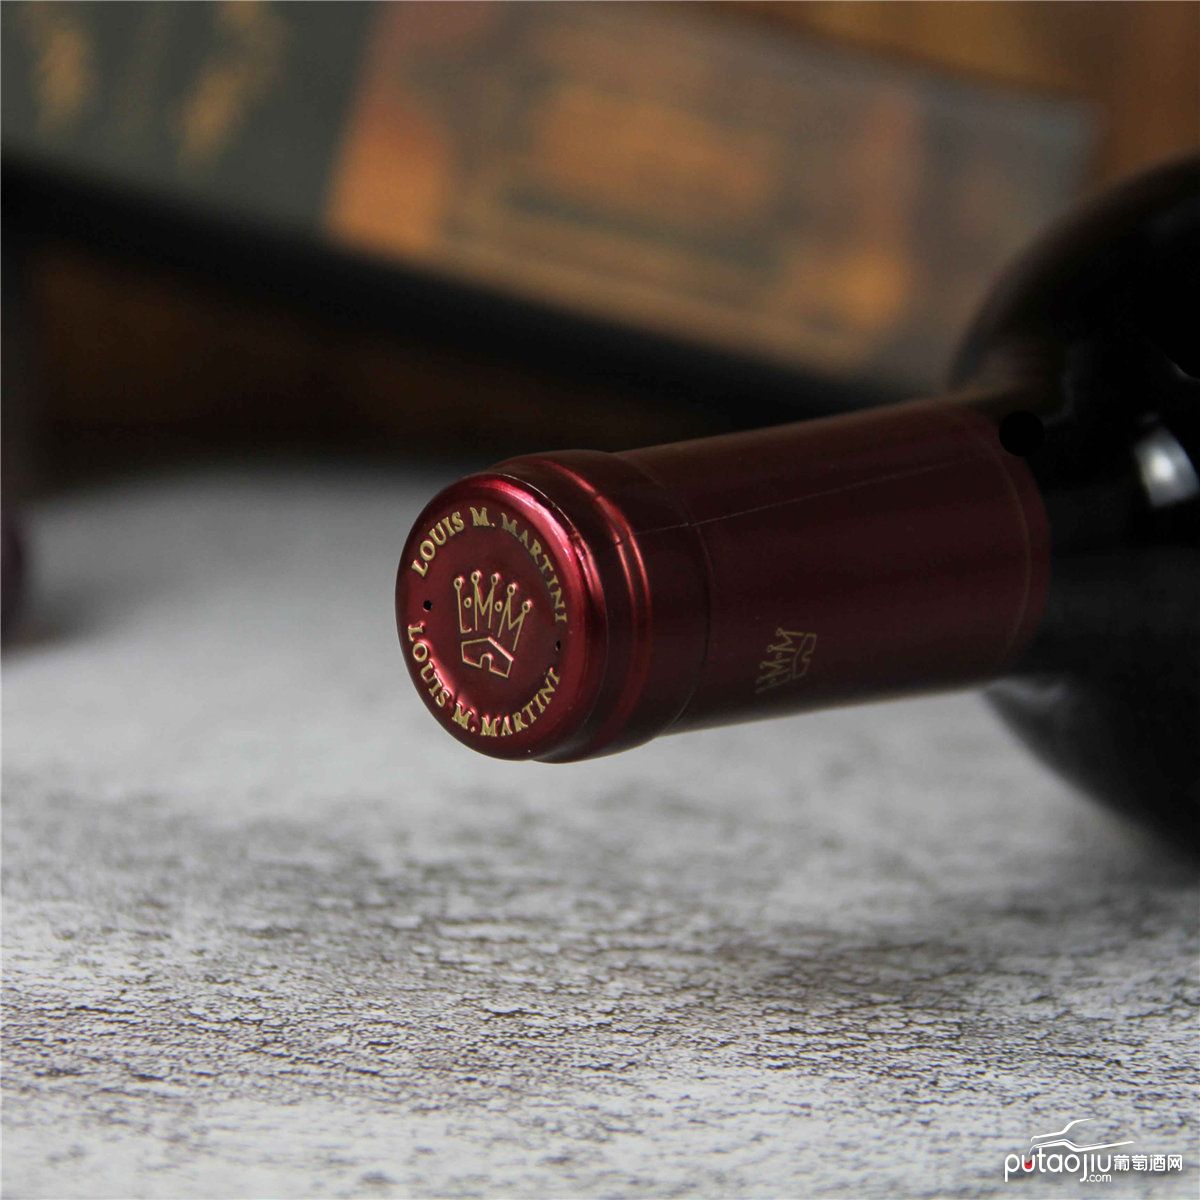 美国路易·马天尼索诺玛赤霞珠红葡萄酒